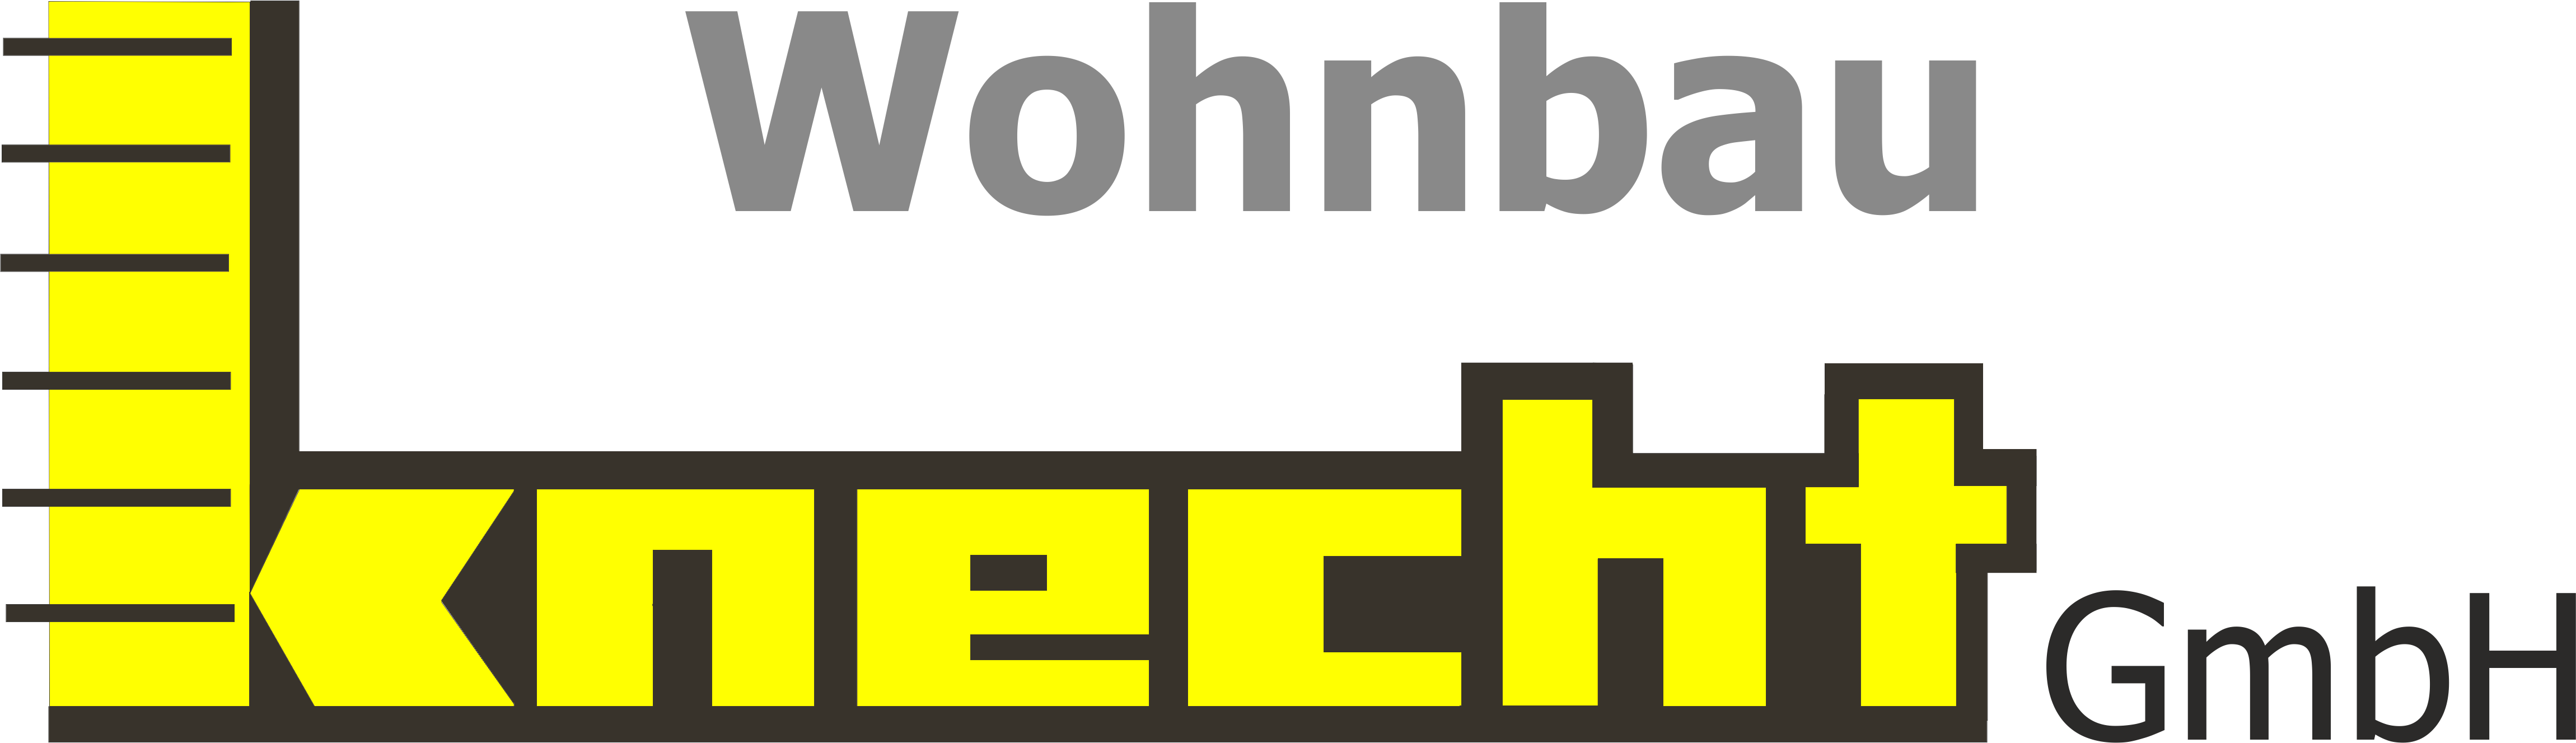 Wohnbau Knecht GmbH